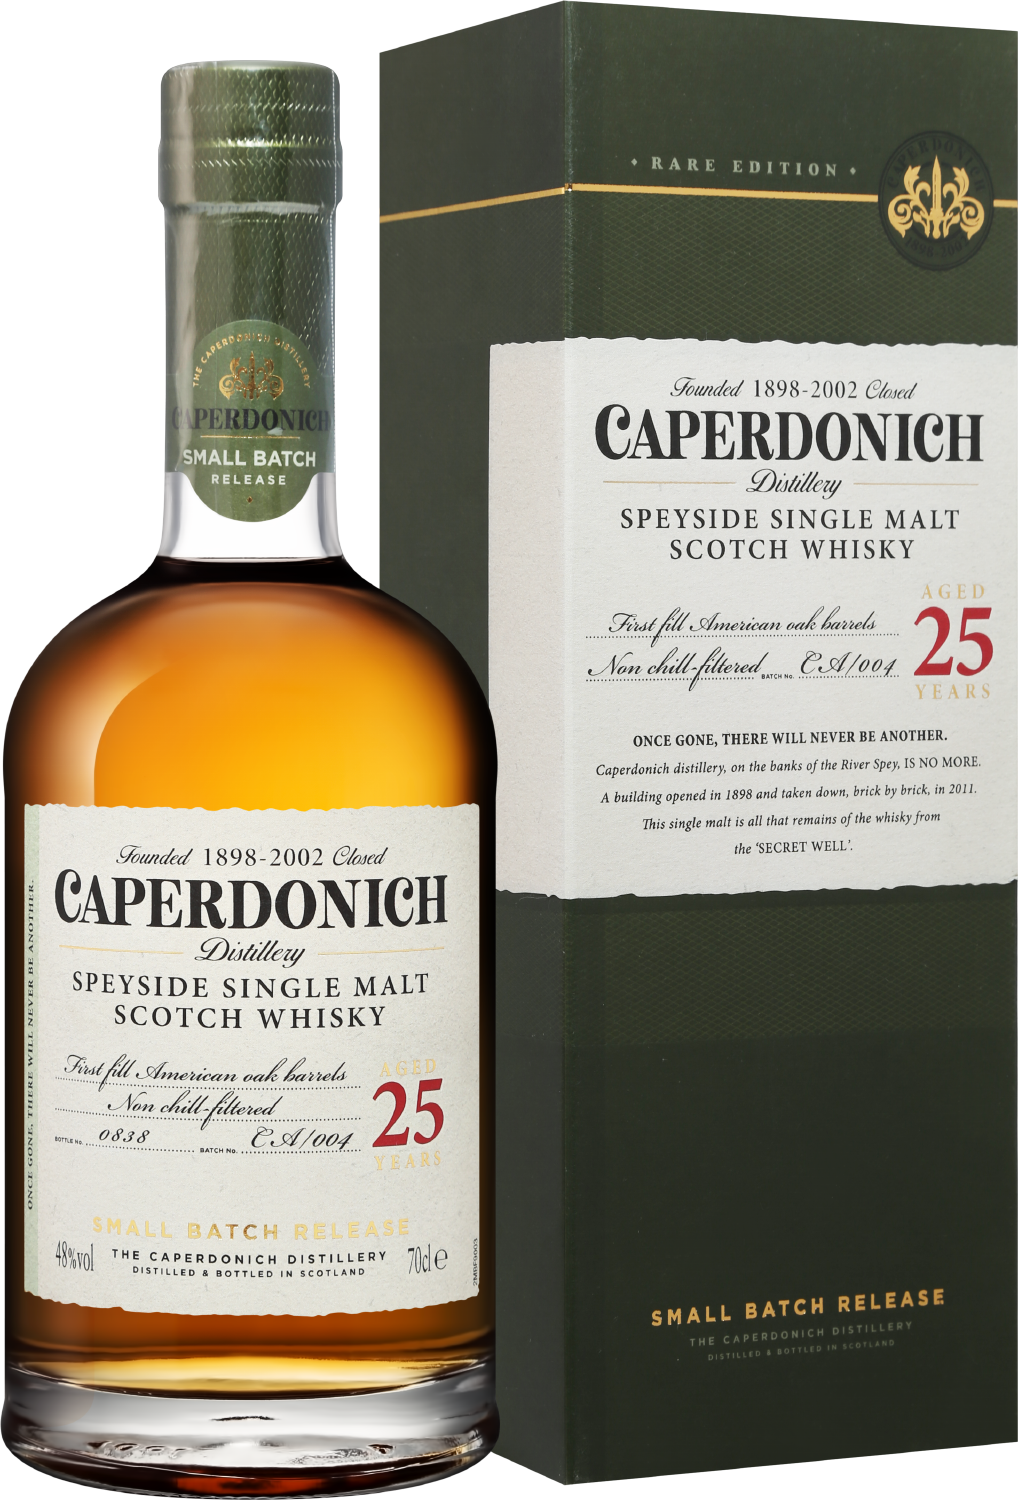 Caperdonich Speyside Single Malt Scotch Whisky 25 y.o. (gift box)